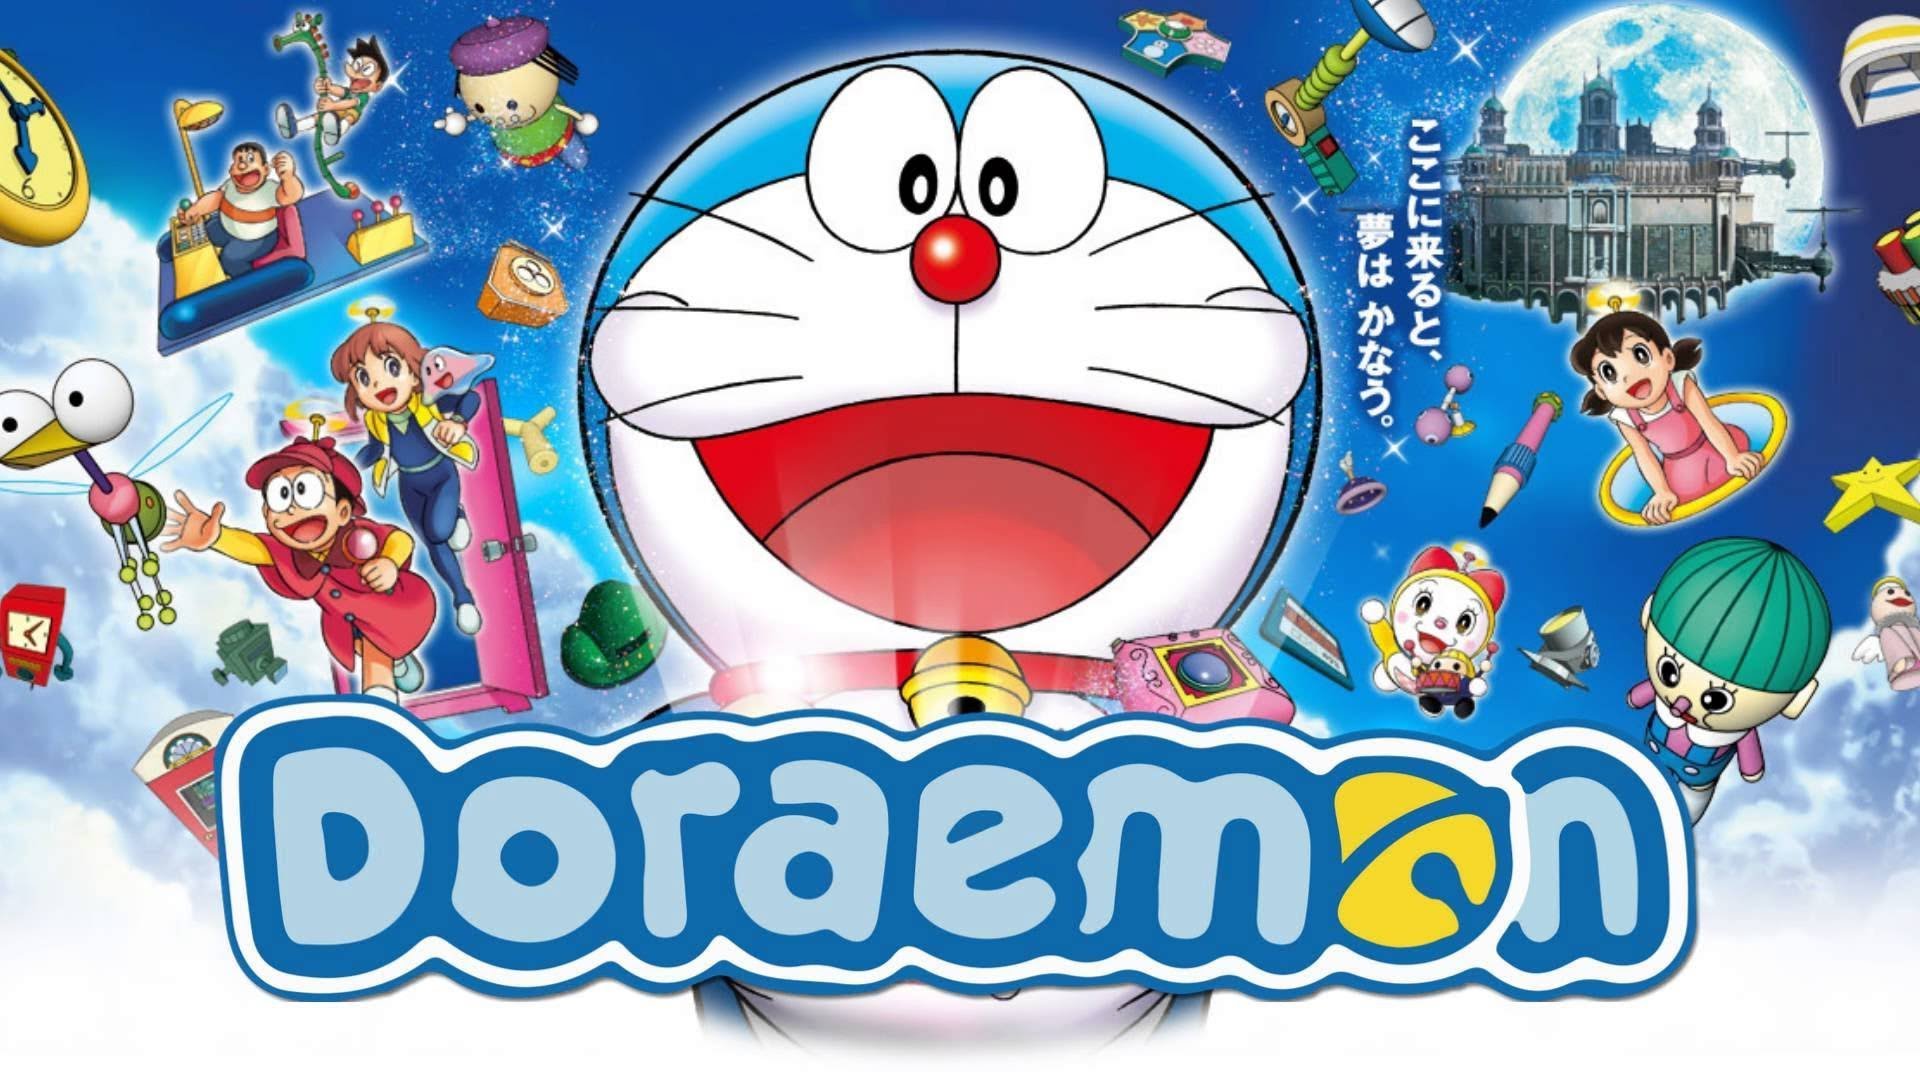 Tải về miễn phí hình nền Doraemon Nobita sử dụng súng thần kỳ để tận hưởng trải nghiệm tuyệt vời này. Hình ảnh đầy màu sắc sẽ không chỉ làm bạn hài lòng mà còn đem lại niềm vui cho những người xung quanh bạn.